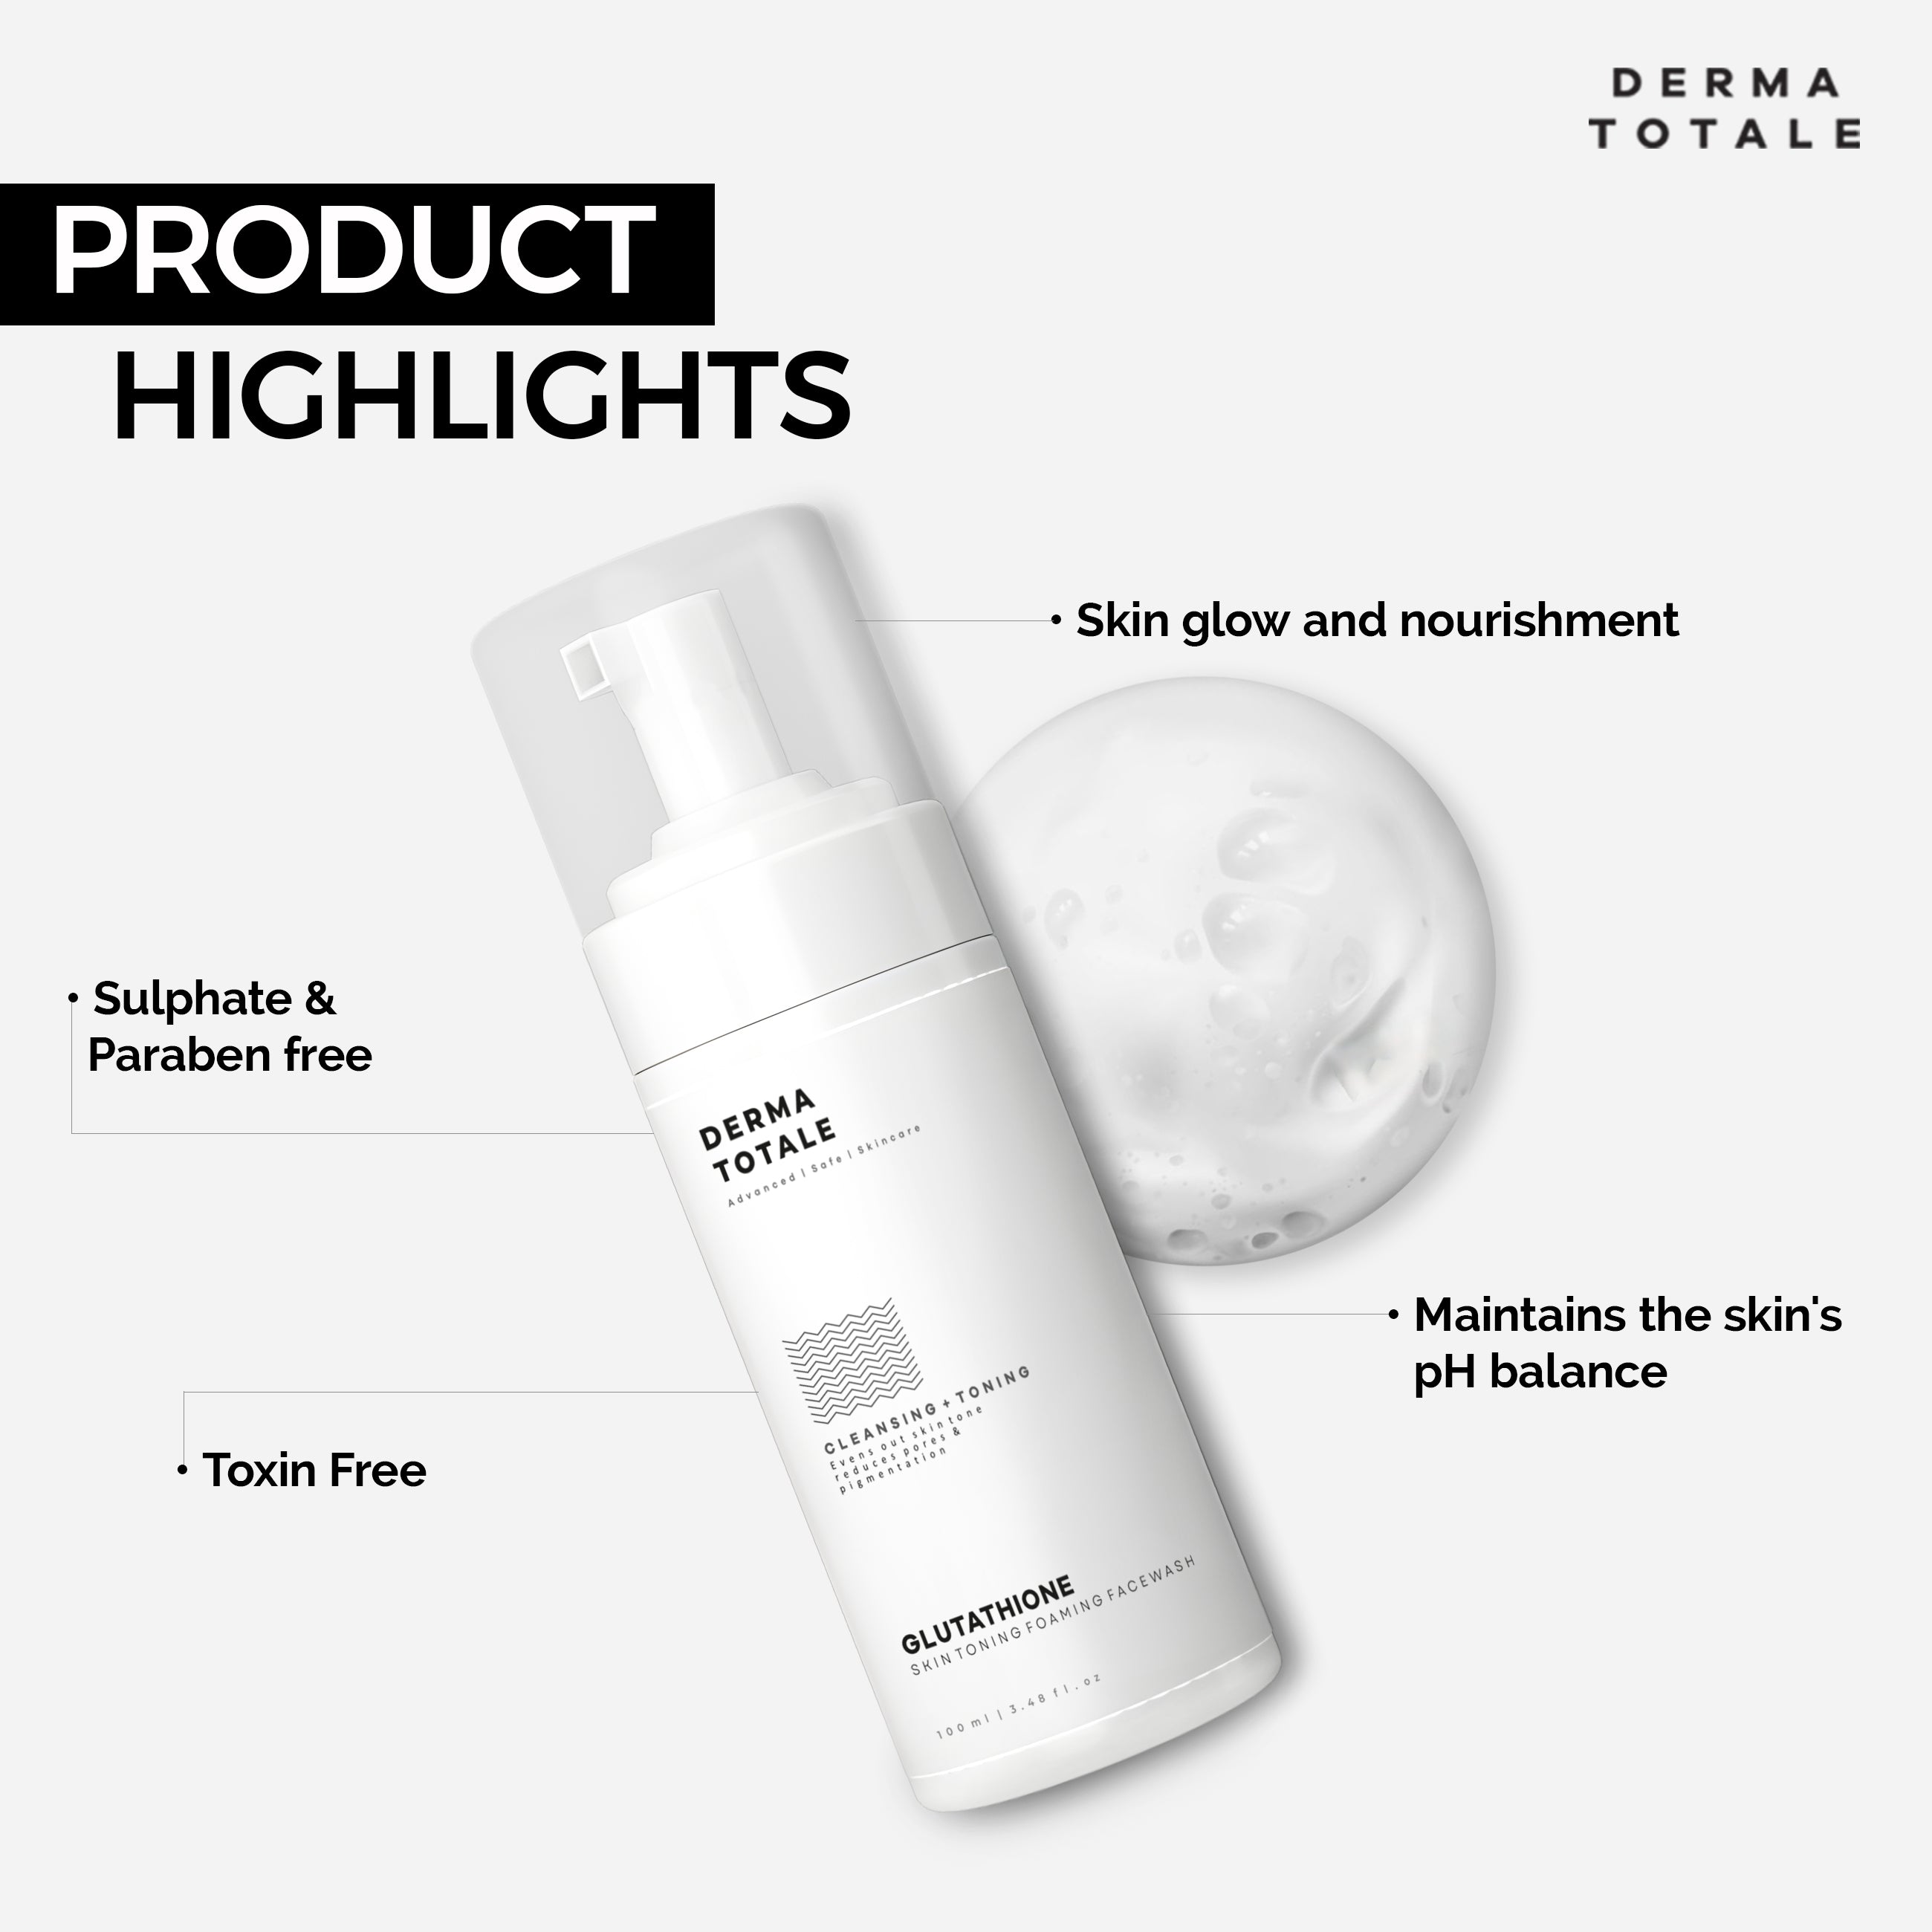 Glutathione Skin Toning Facewash - 100ml product highlights 